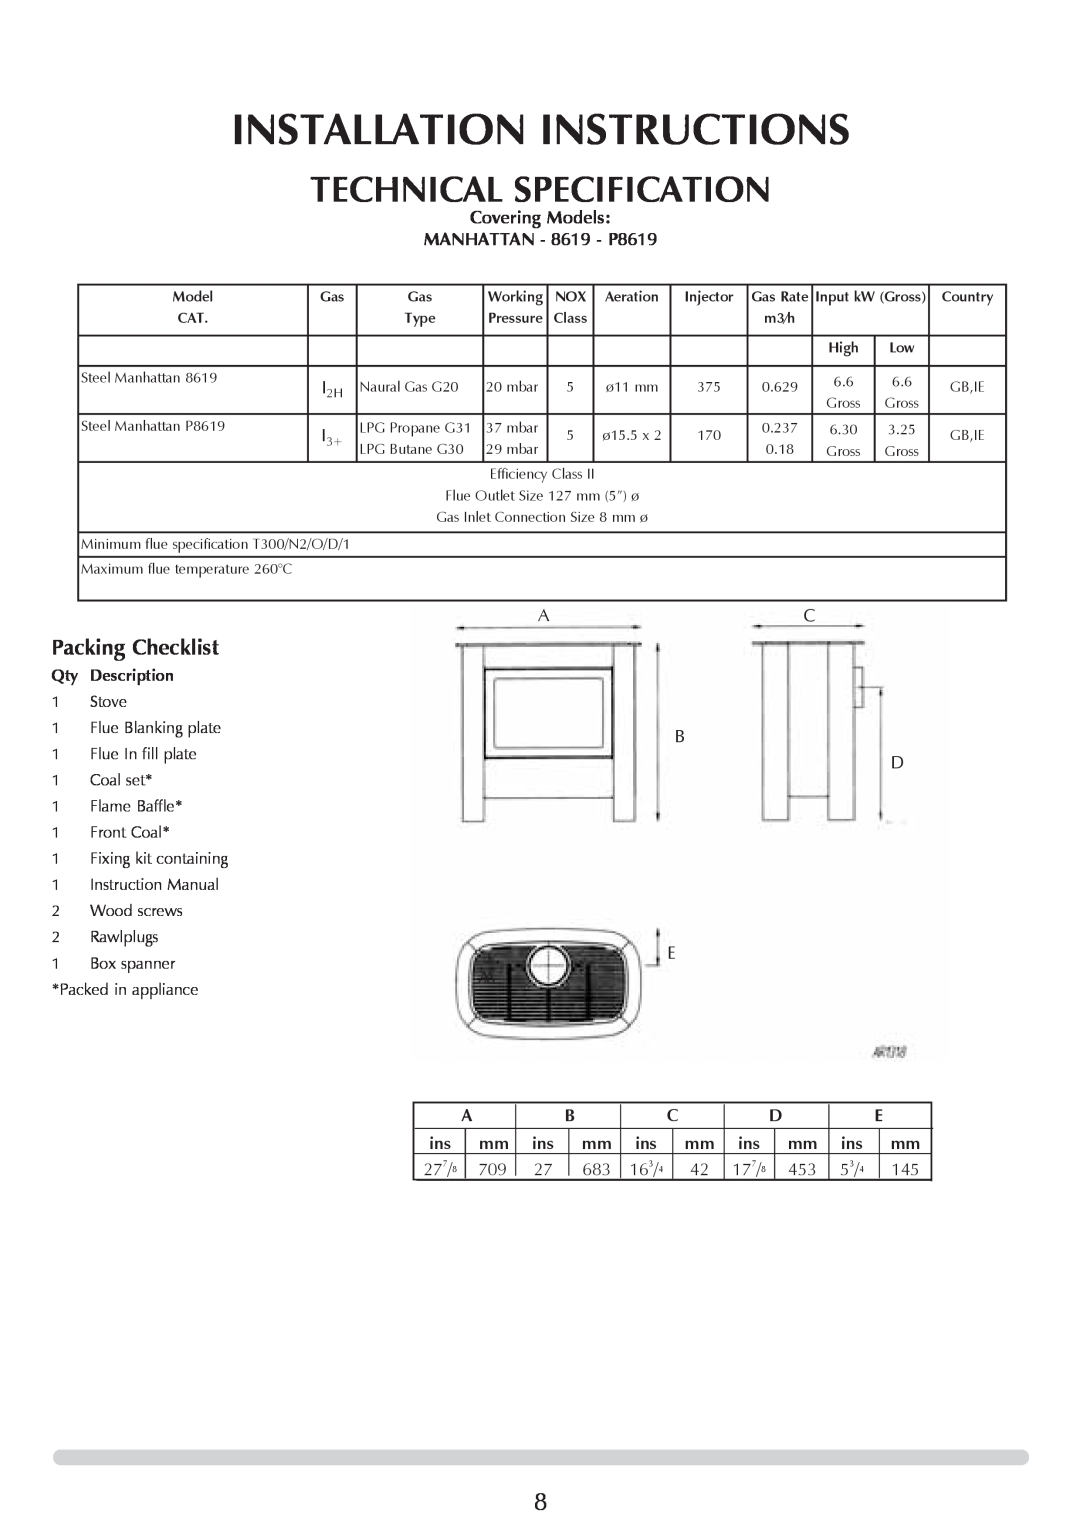 Stovax AR0367, Steel Manhattan AR0365, AR0366, AR0887, AR0369, AR0368 manual Installation Instructions, Technical Specification 